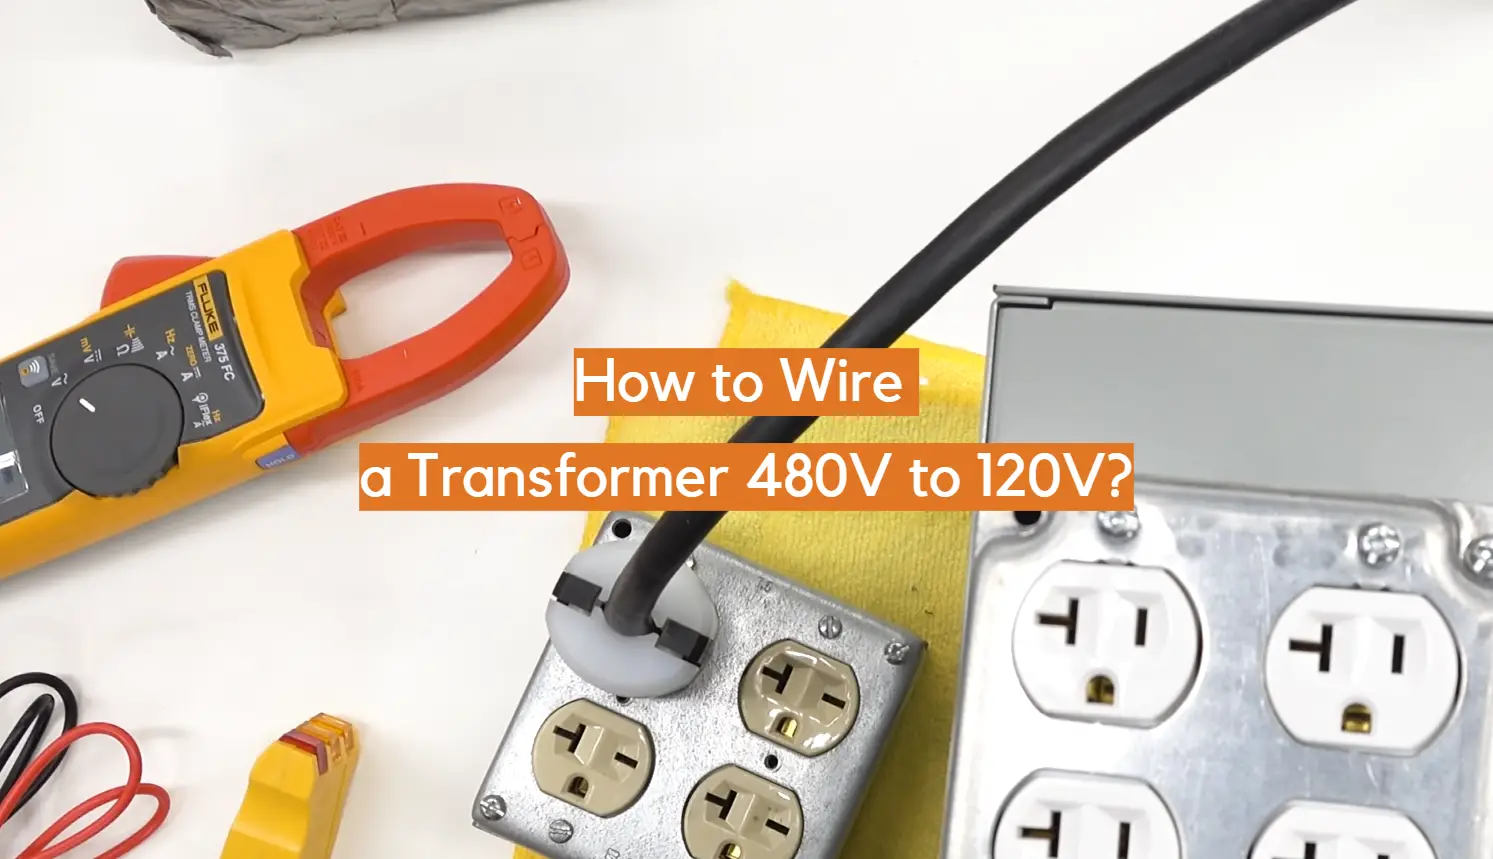 How to Wire a Transformer 480V to 120V?